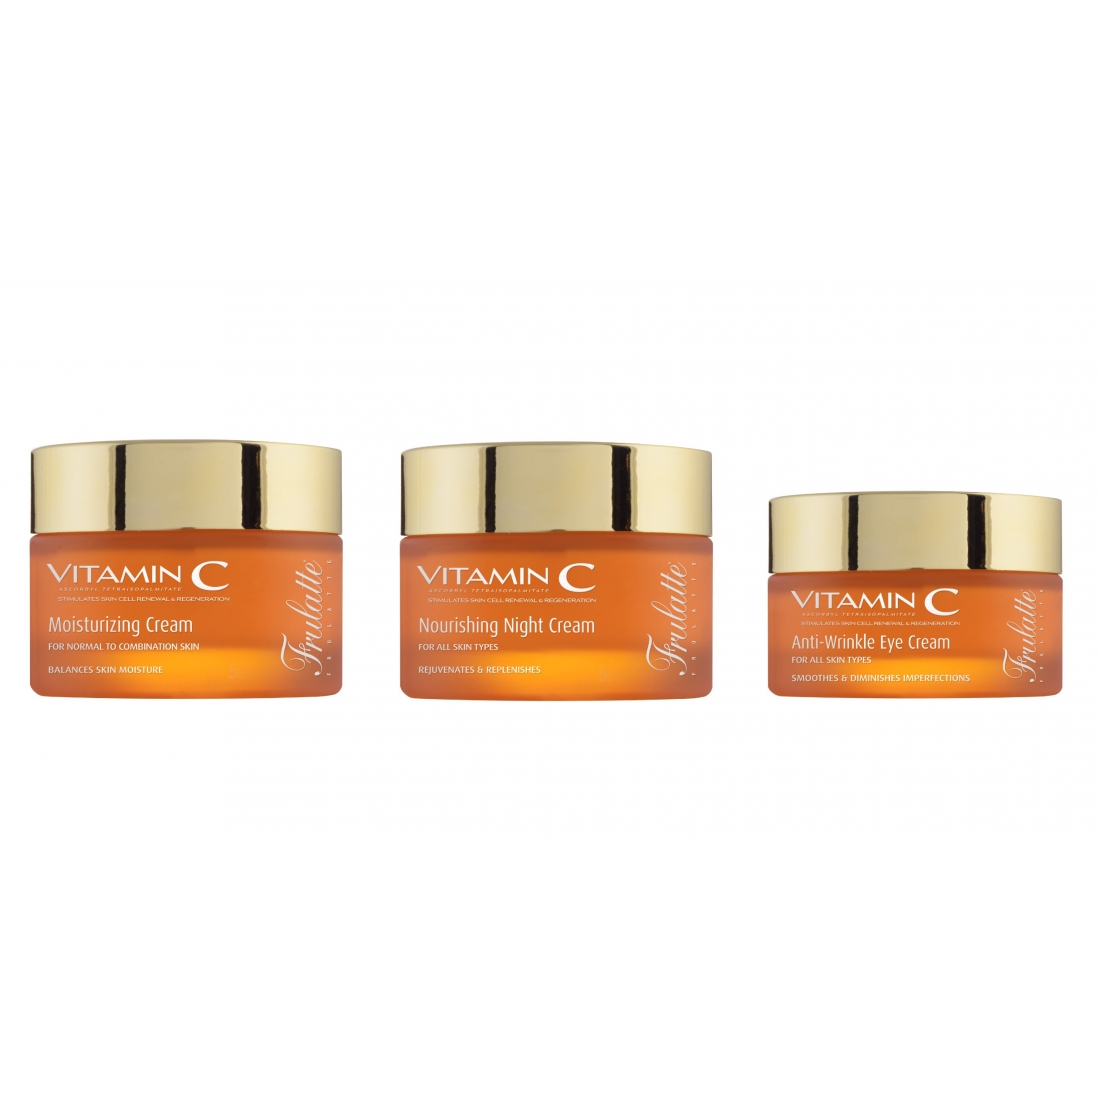 'Vitamin C' SkinCare Set - 3 Pieces